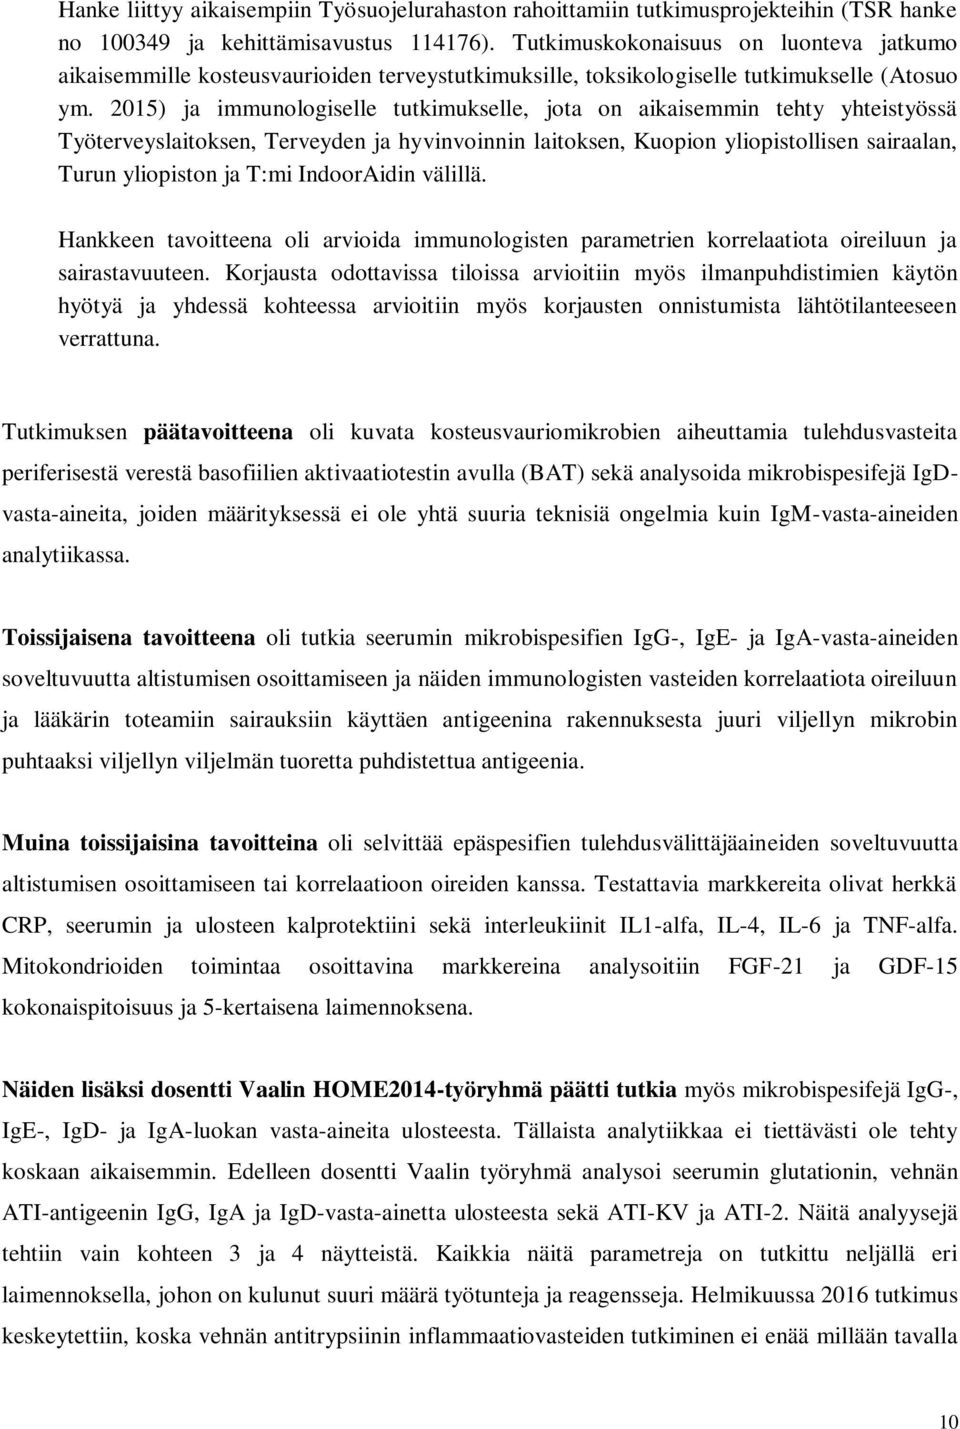 15) ja immunologiselle tutkimukselle, jota on aikaisemmin tehty yhteistyössä Työterveyslaitoksen, Terveyden ja hyvinvoinnin laitoksen, Kuopion yliopistollisen sairaalan, Turun yliopiston ja T:mi